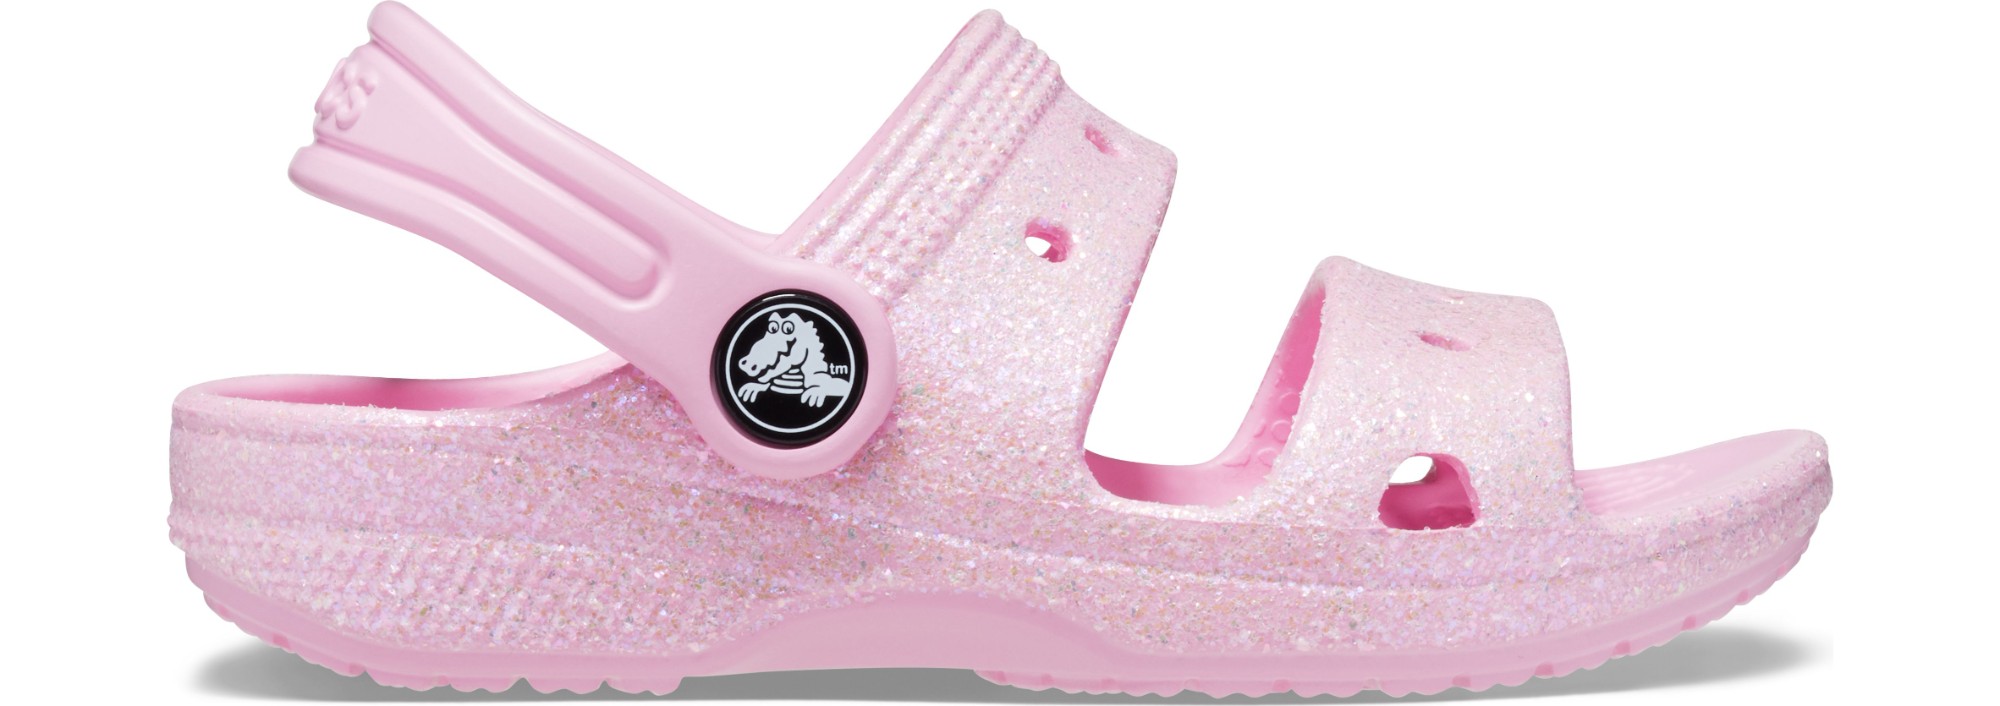 Crocs™ Classic Glitter Sandal Kid's 207983 Flamingo 24